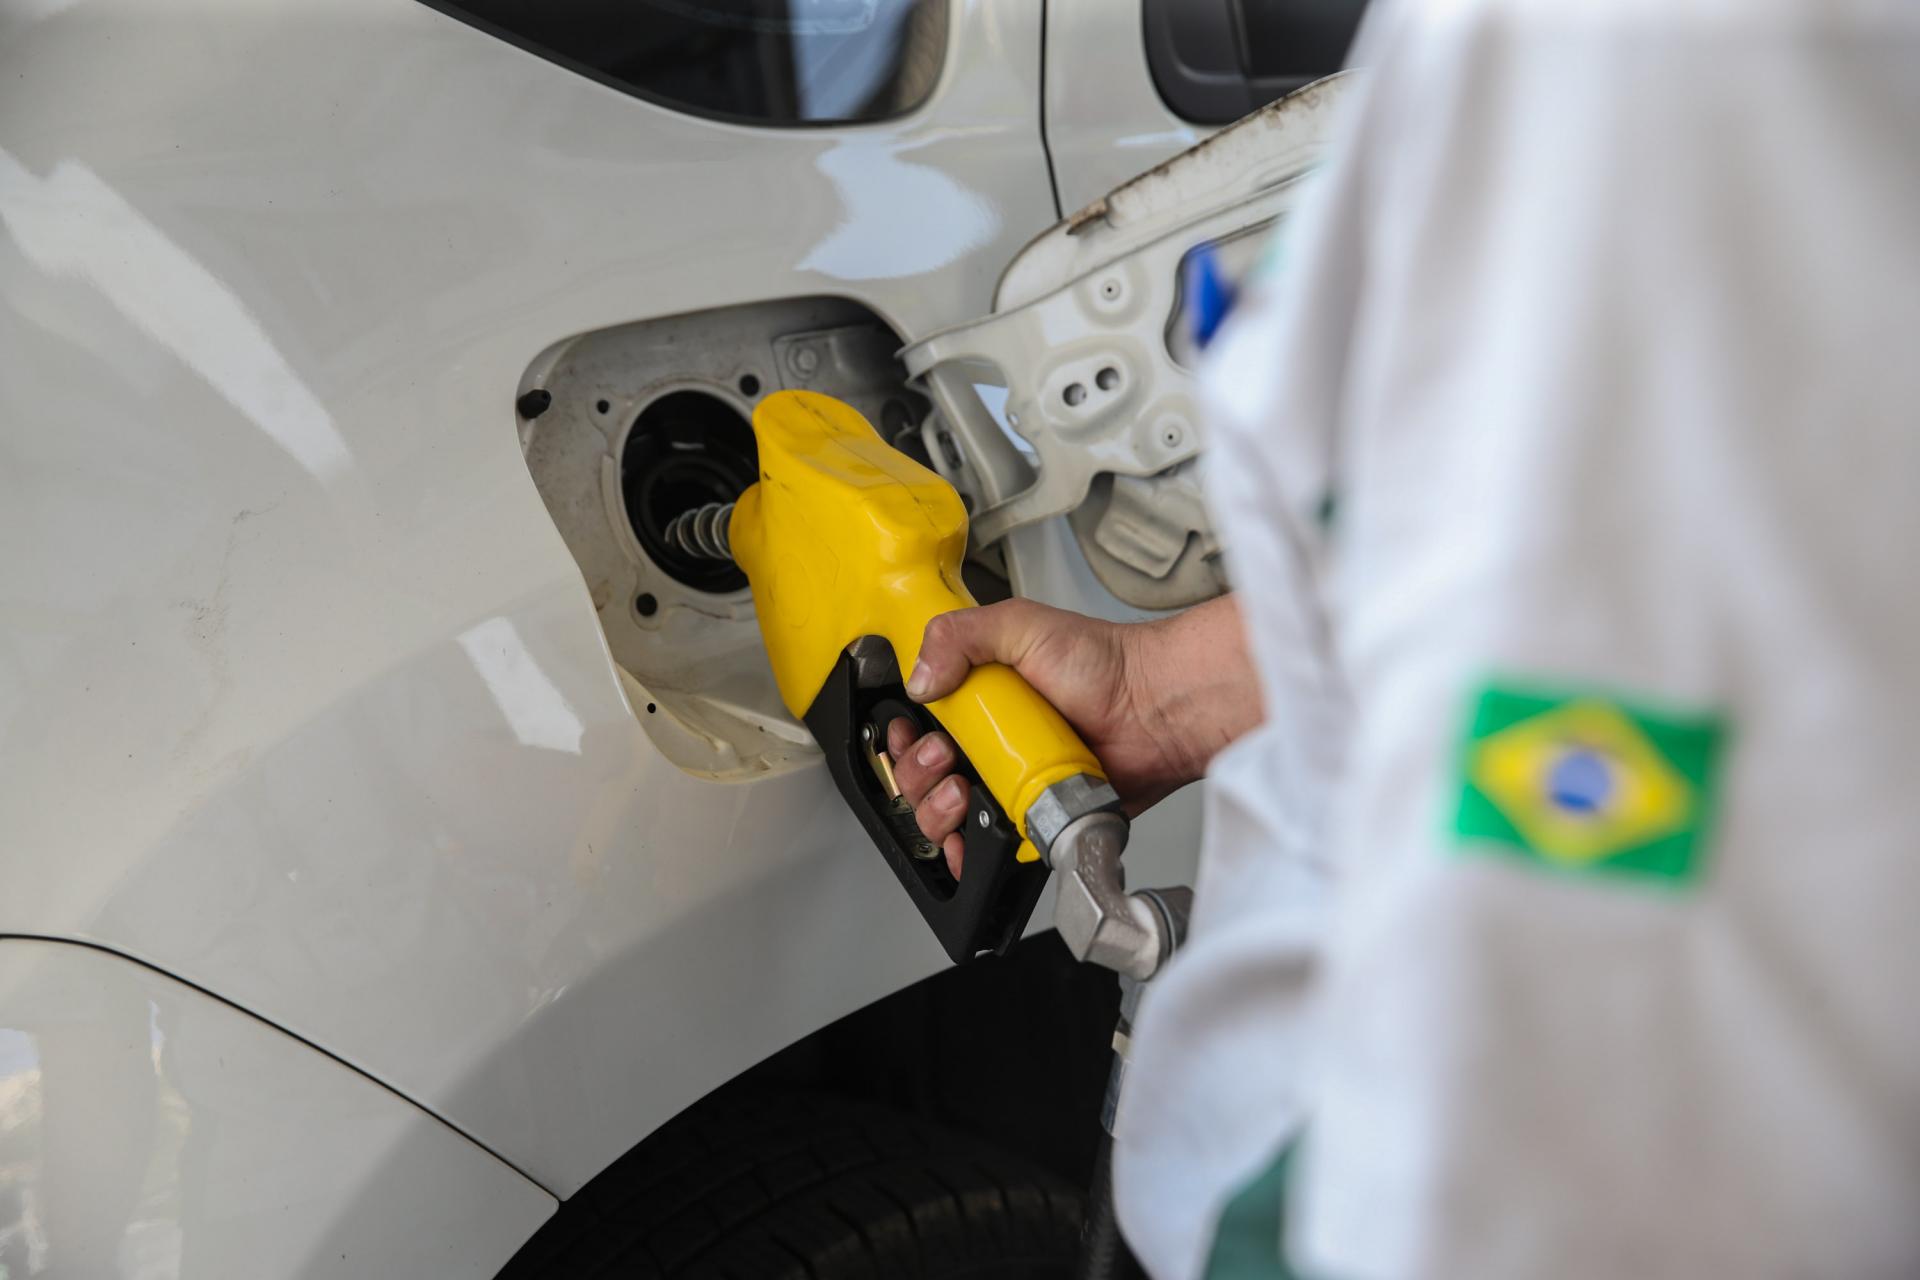 Preço da gasolina bate recorde no país, a R$ 7,27 o litro